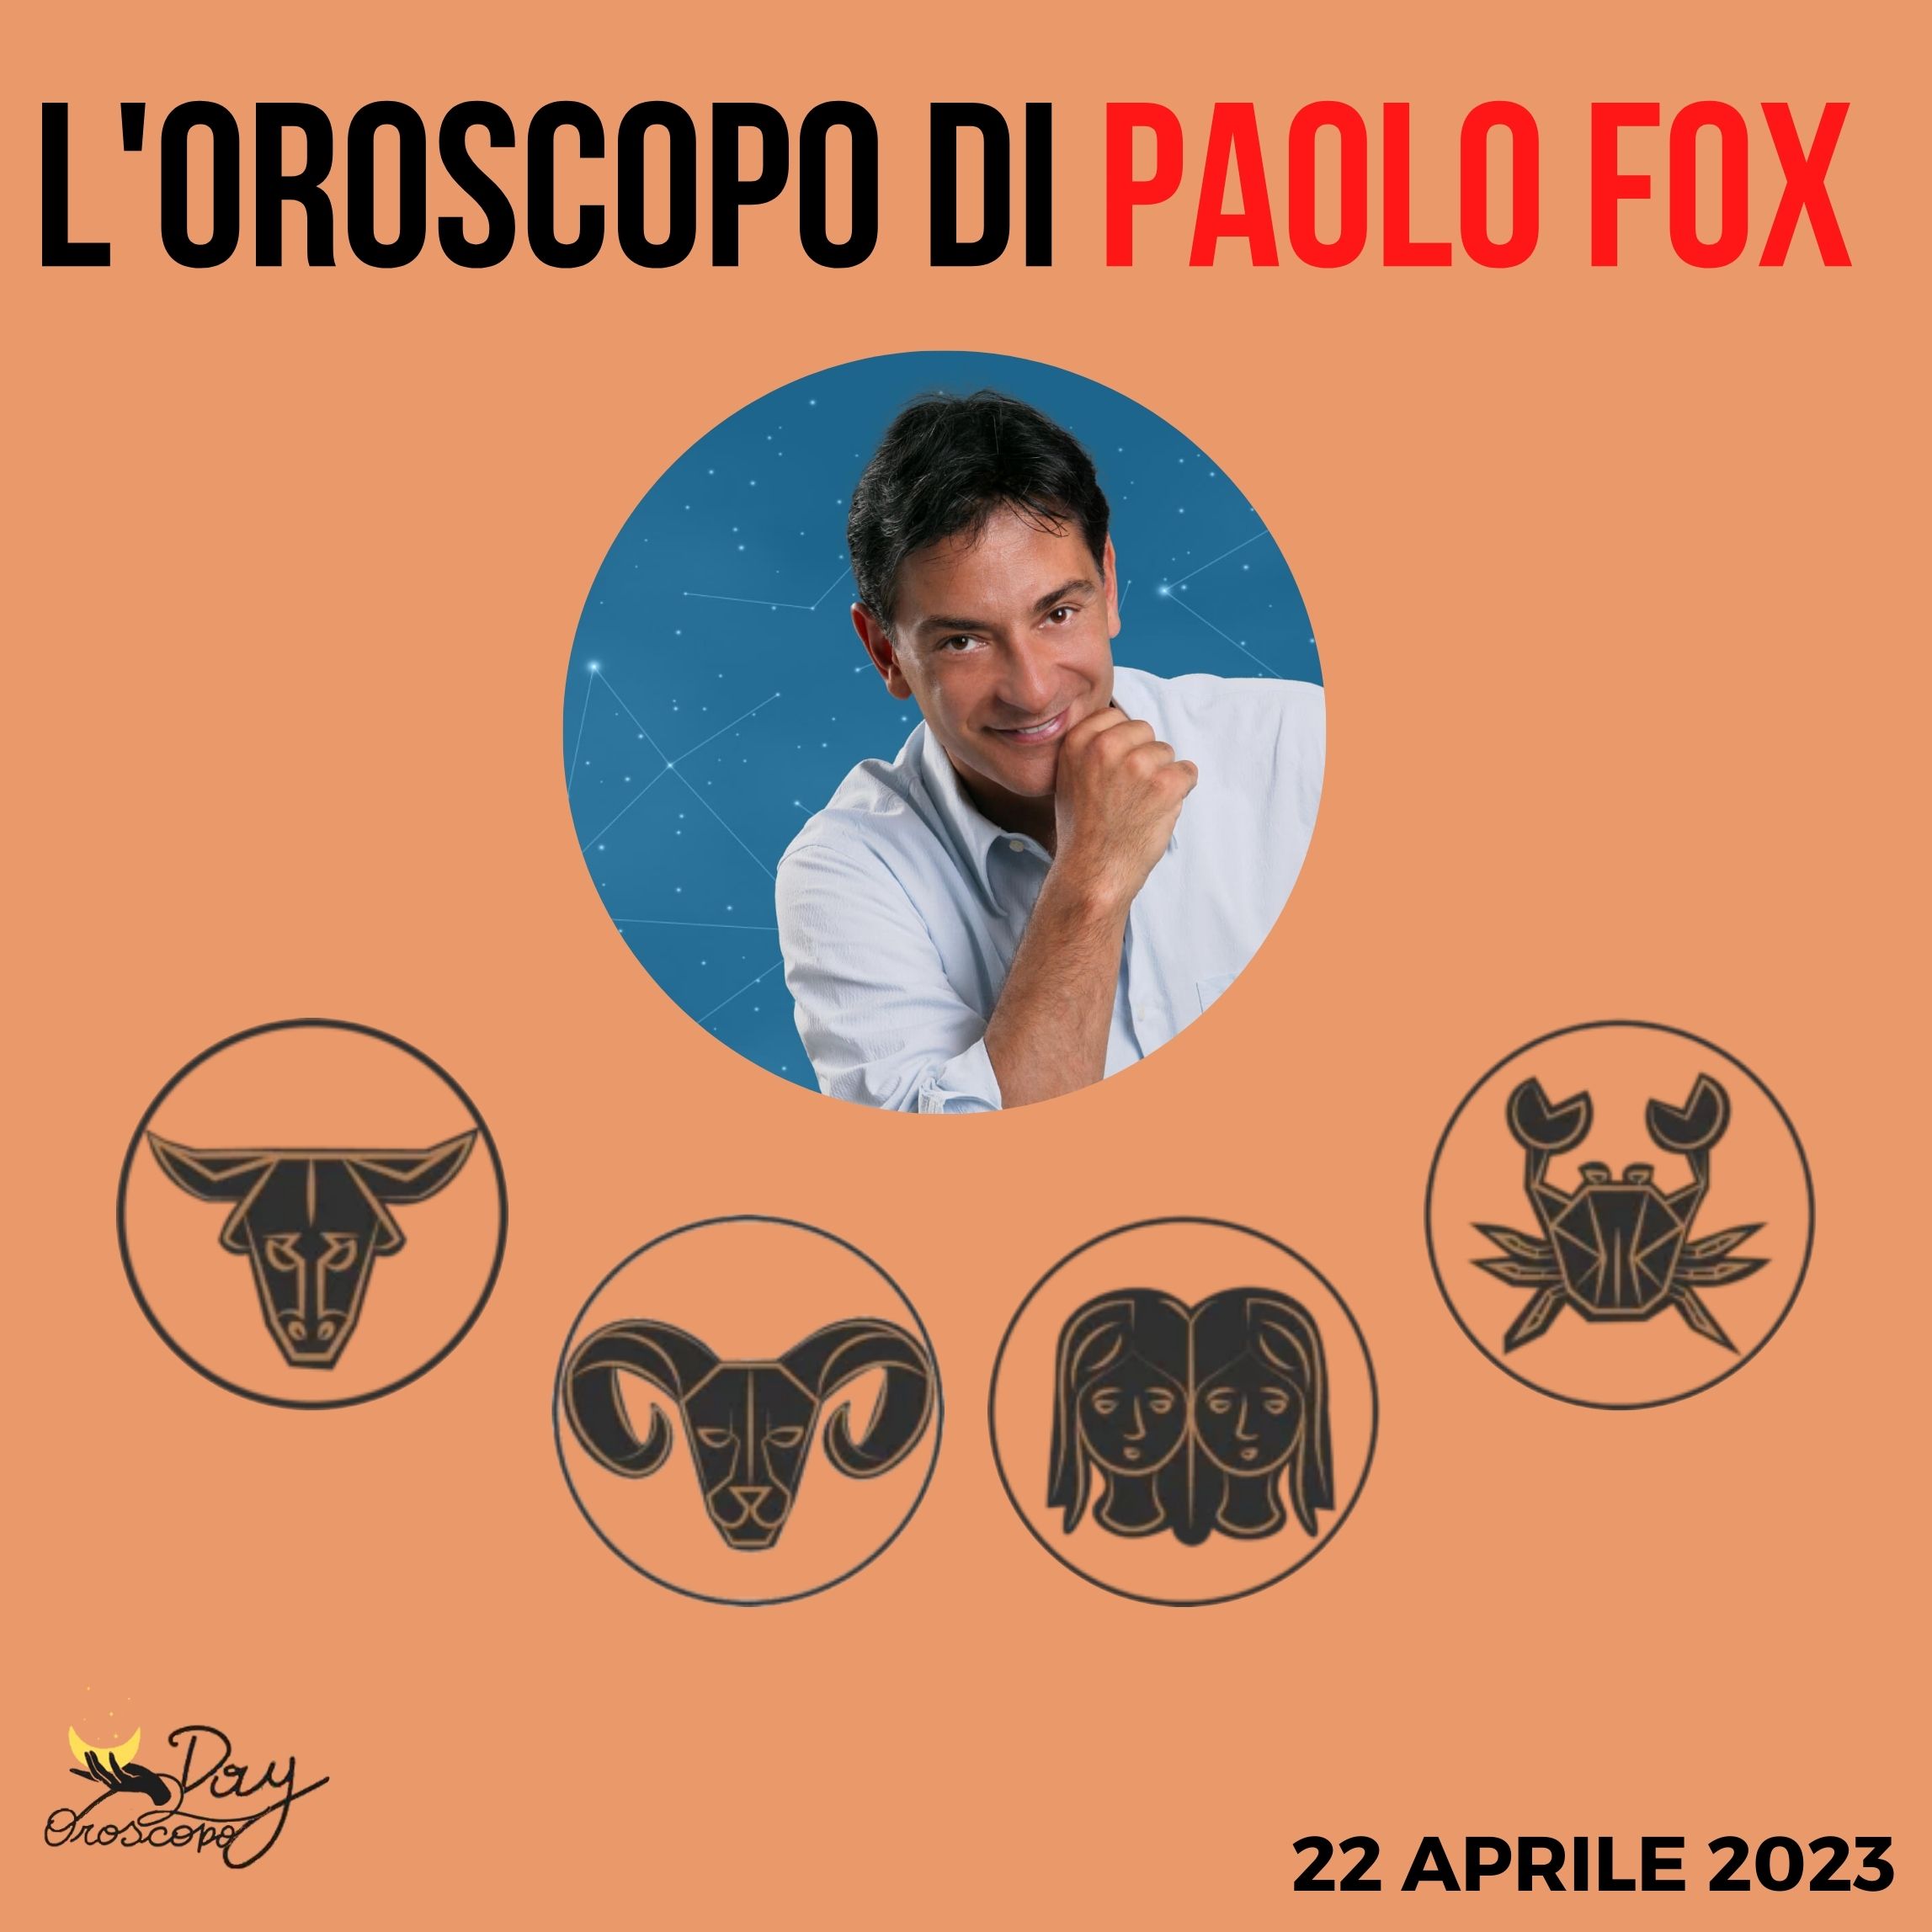 Oroscopo oggi domani Paolo Fox 22 aprile Toro Ariete Gemelli Cancro